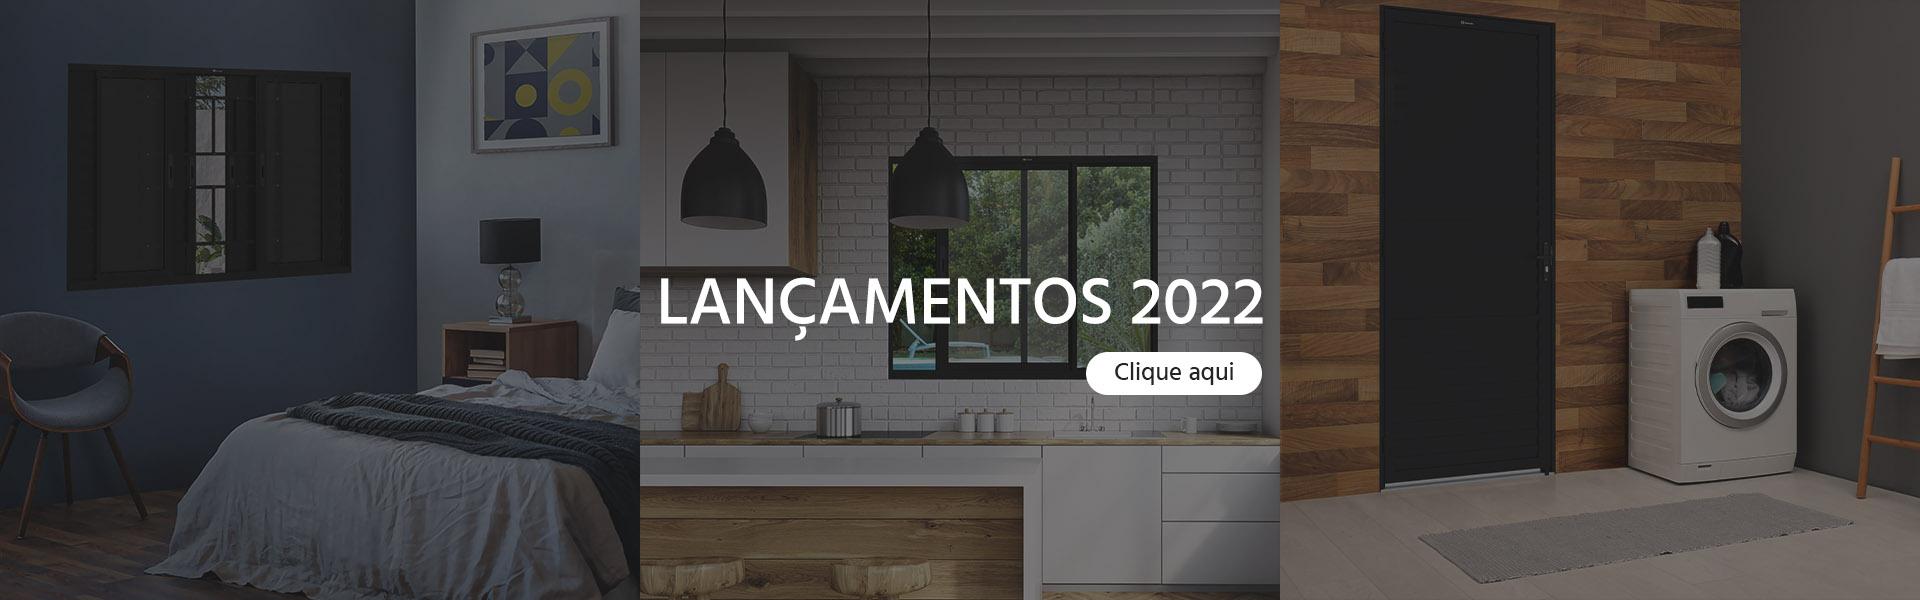 Lançamentos 2022